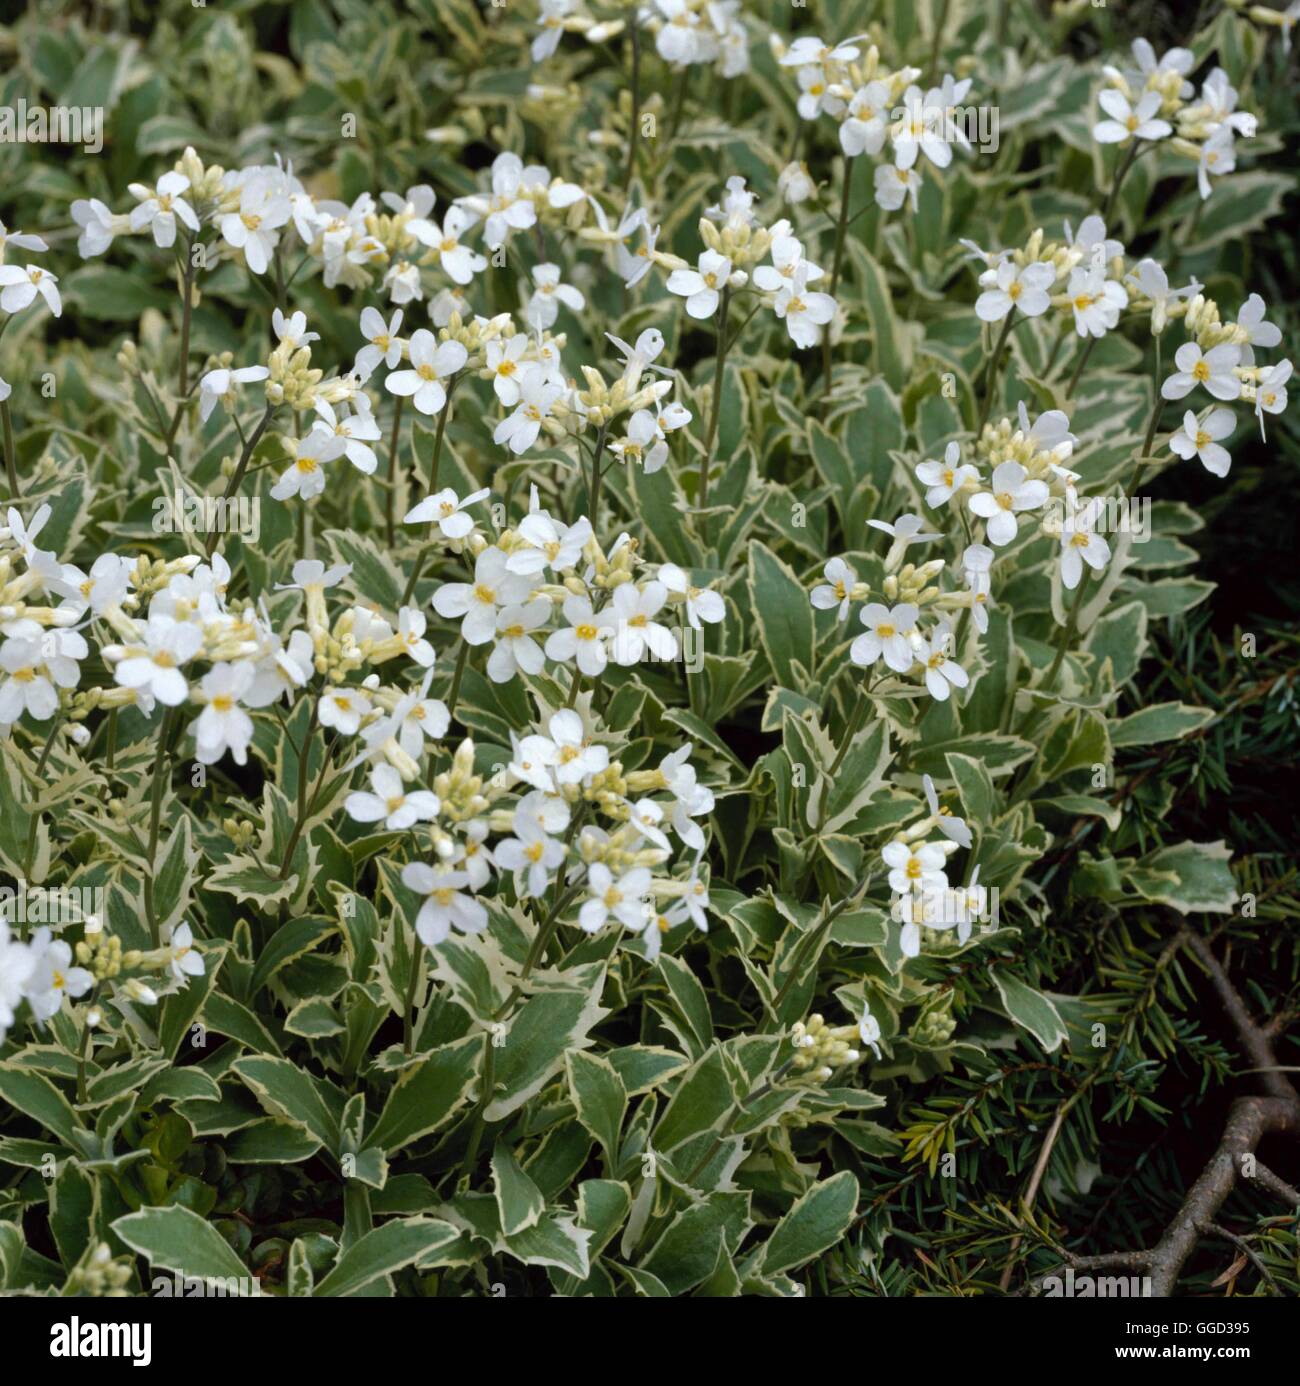 Arabis alpina - ssp. caucasica `Variegata'   ALP069345 Stock Photo